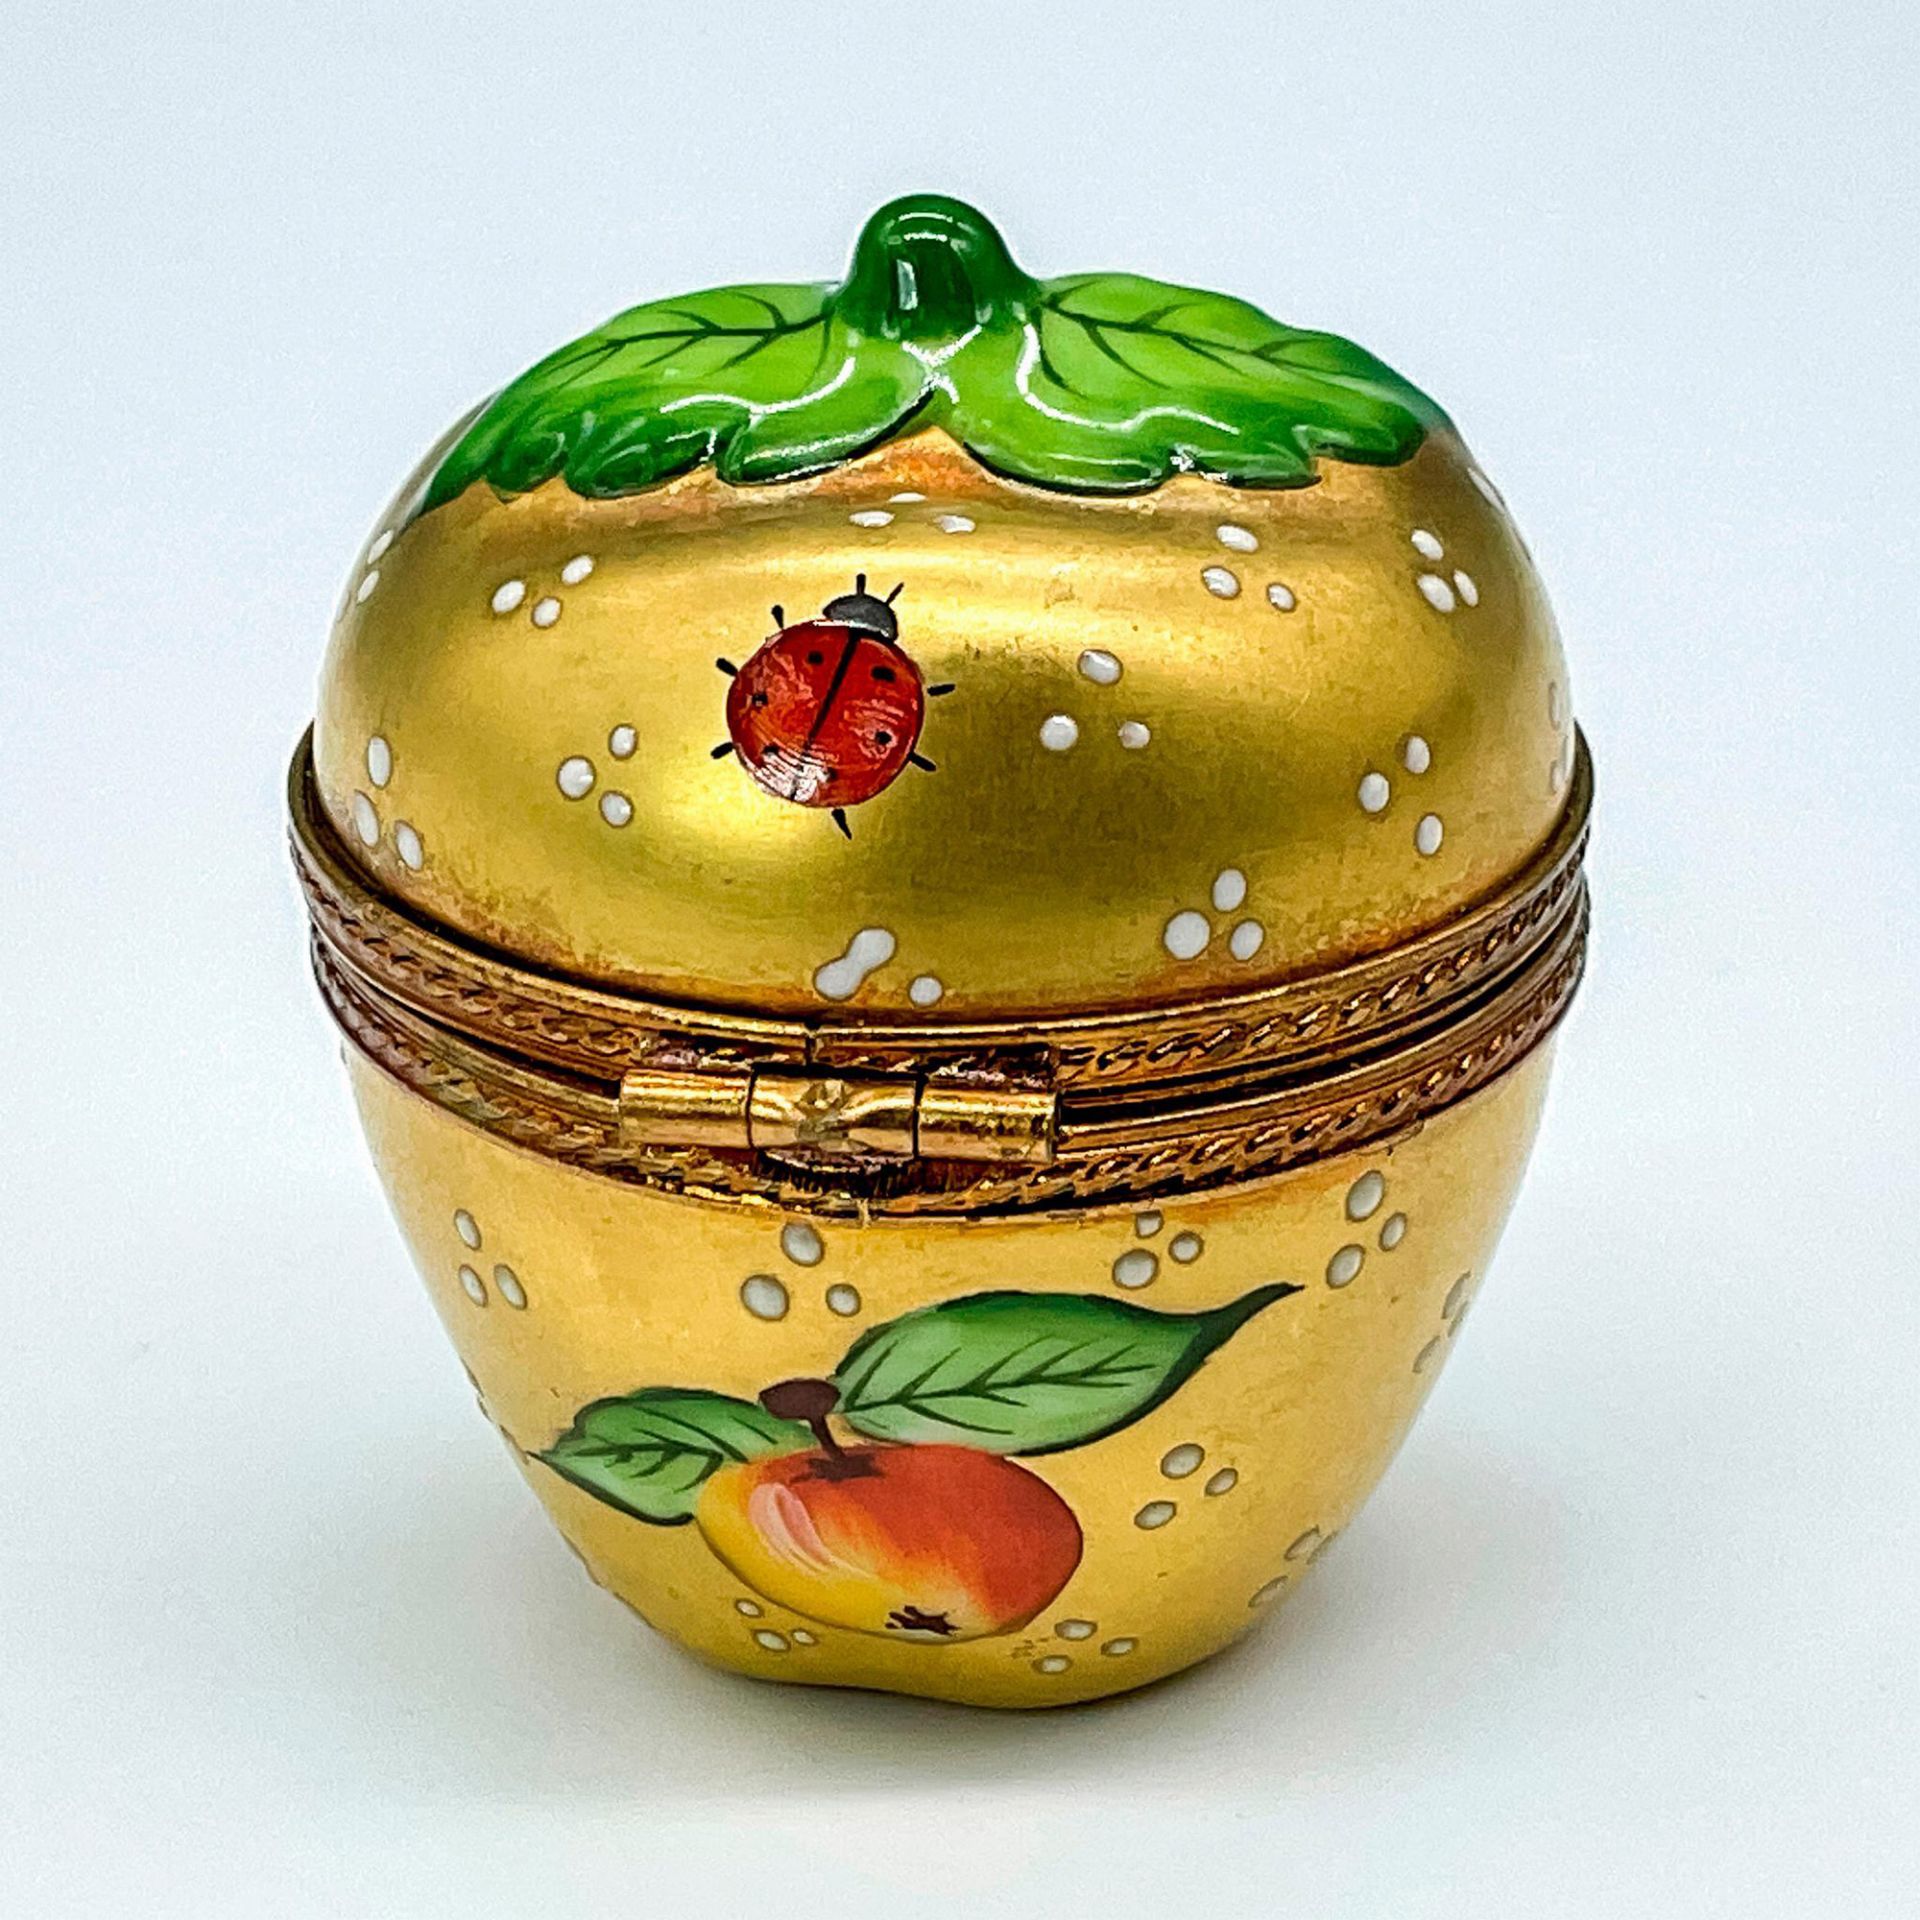 Vintage H. Stern Limoges Porcelain Apple-Shaped Gold Box - Image 2 of 3